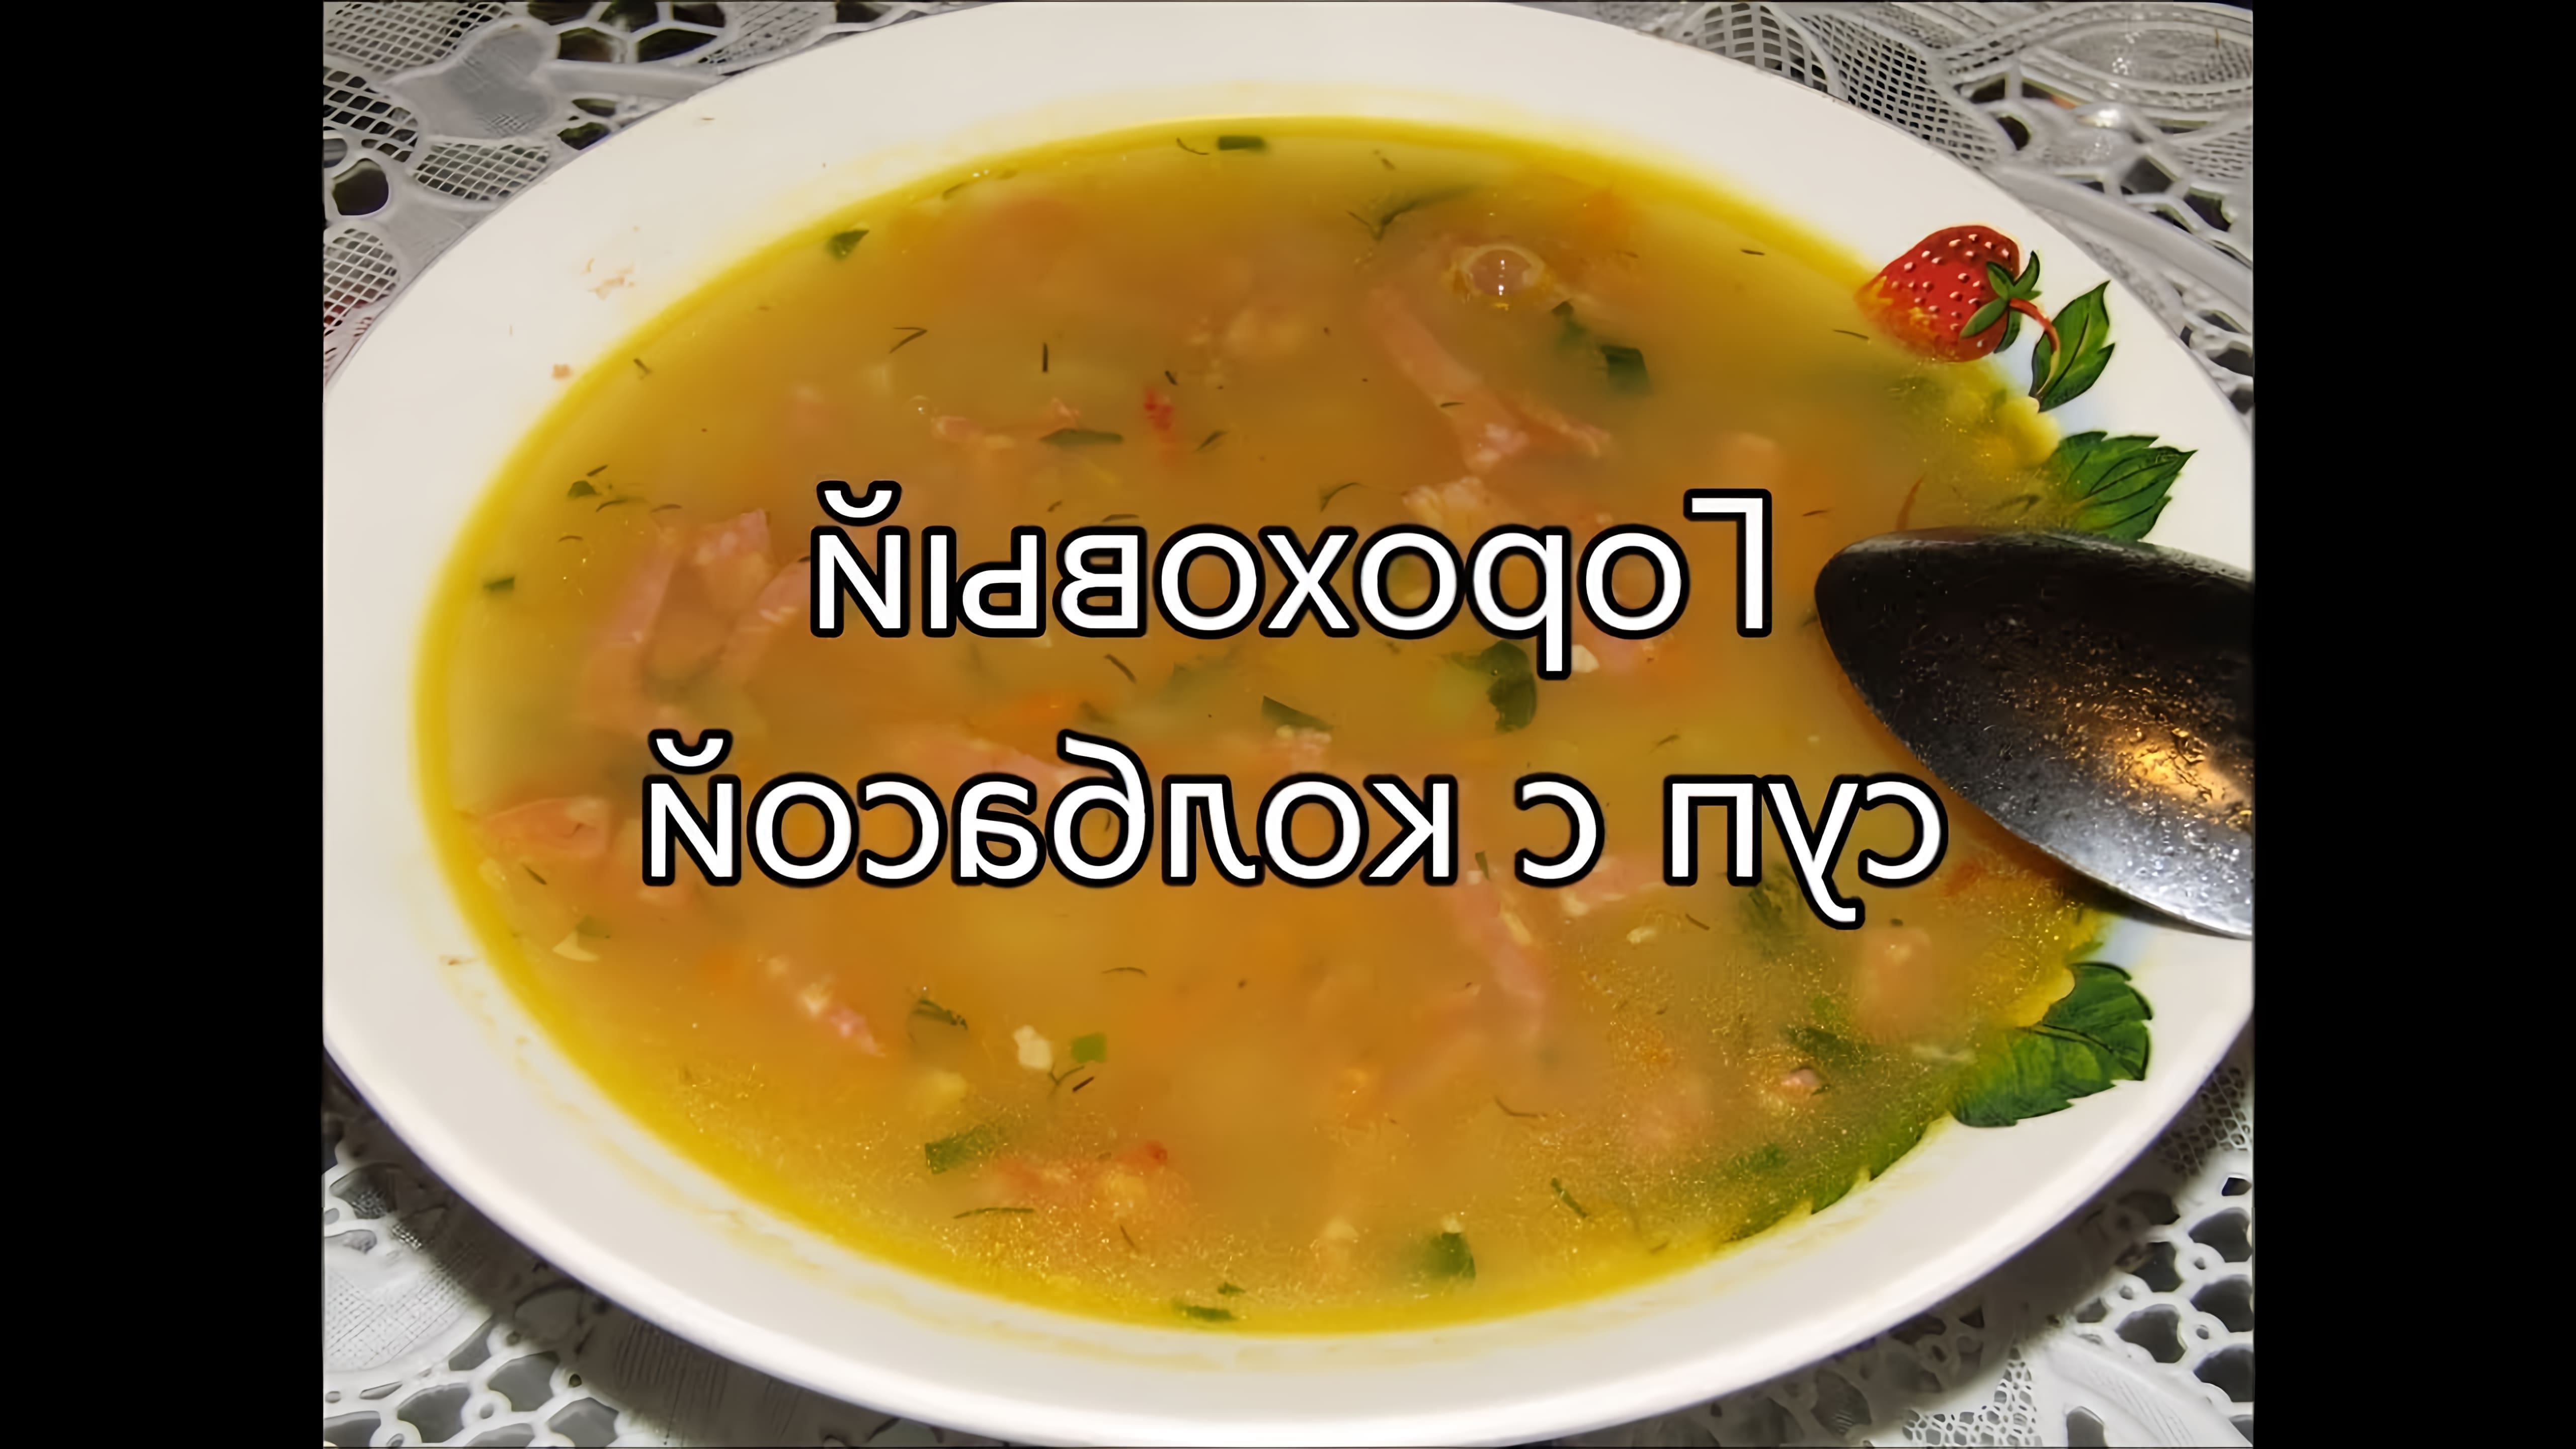 В этом видео демонстрируется процесс приготовления горохового супа с колбасой